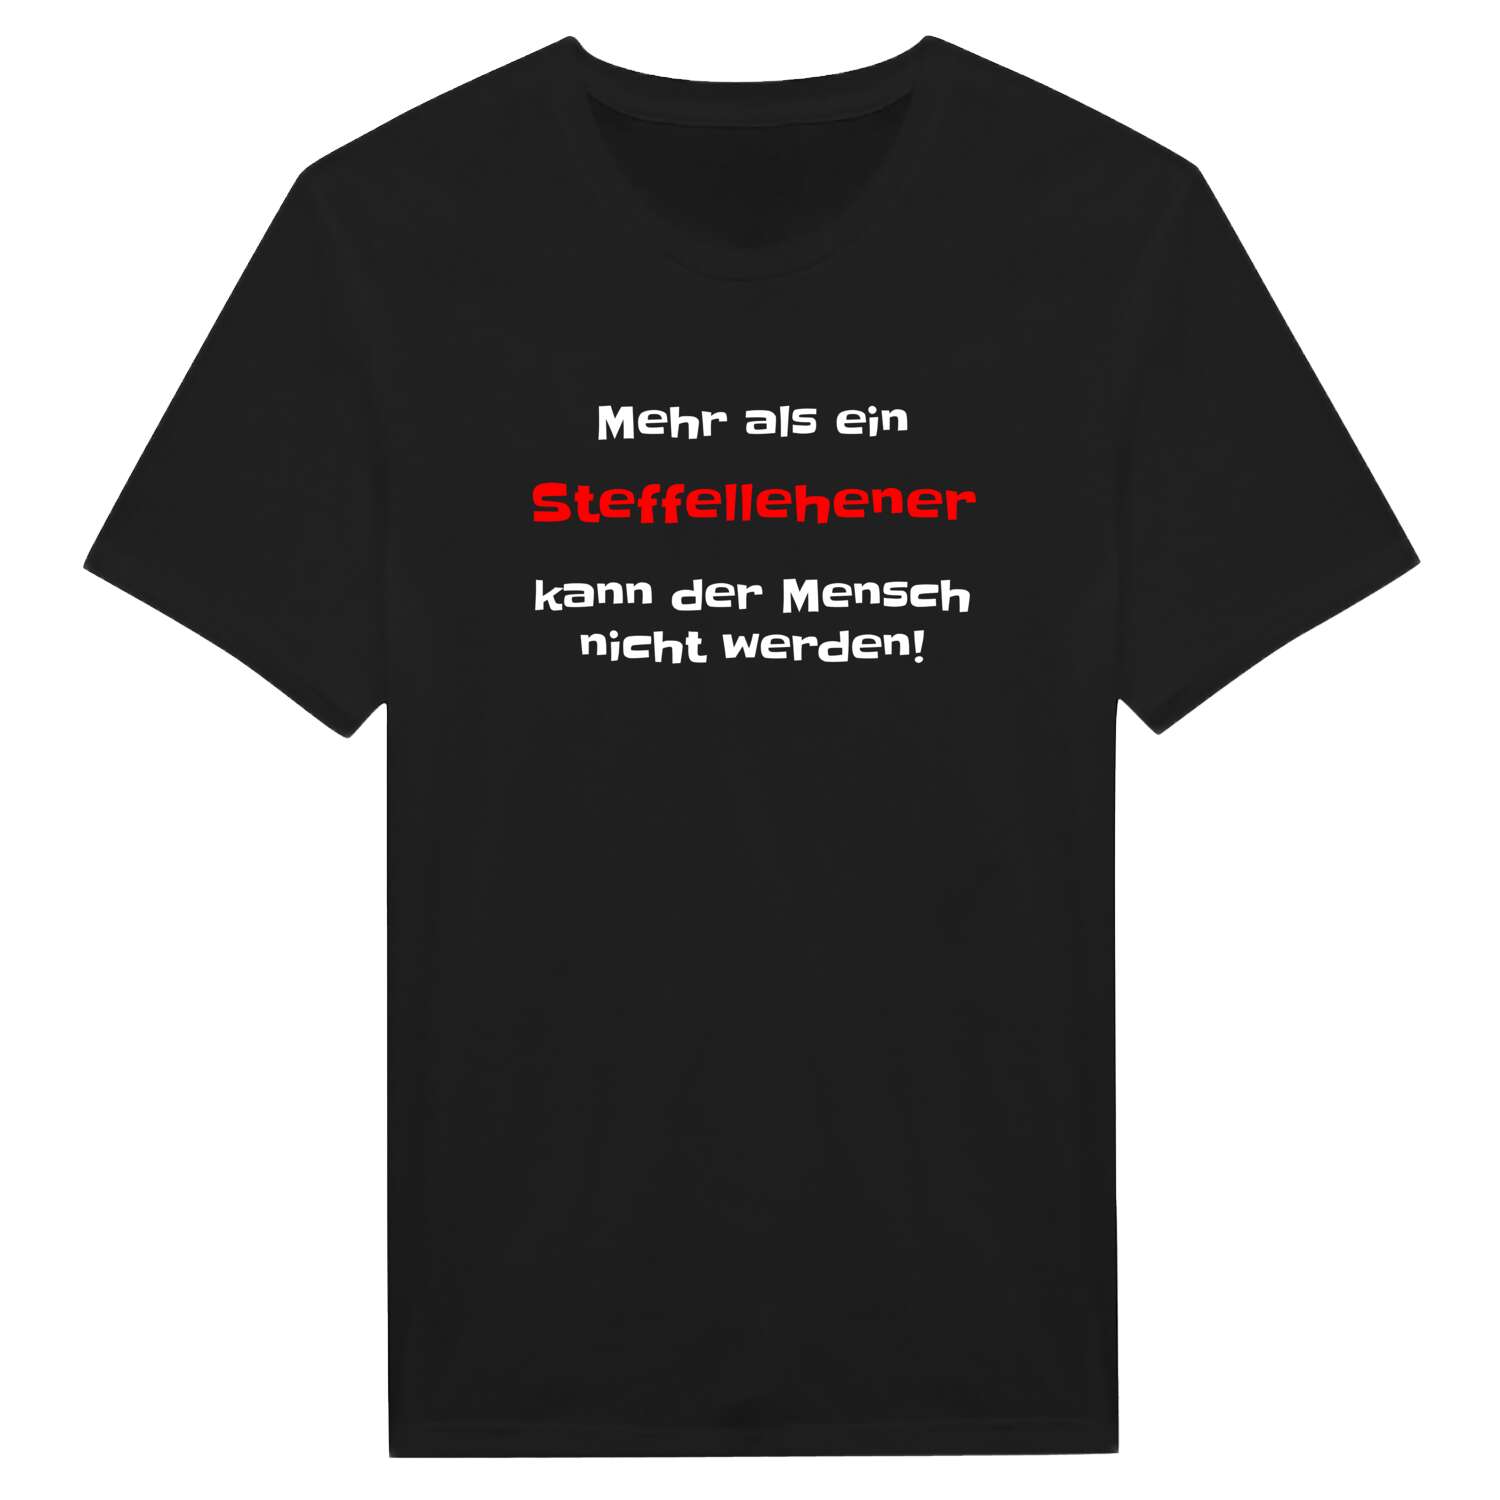 Steffellehen T-Shirt »Mehr als ein«